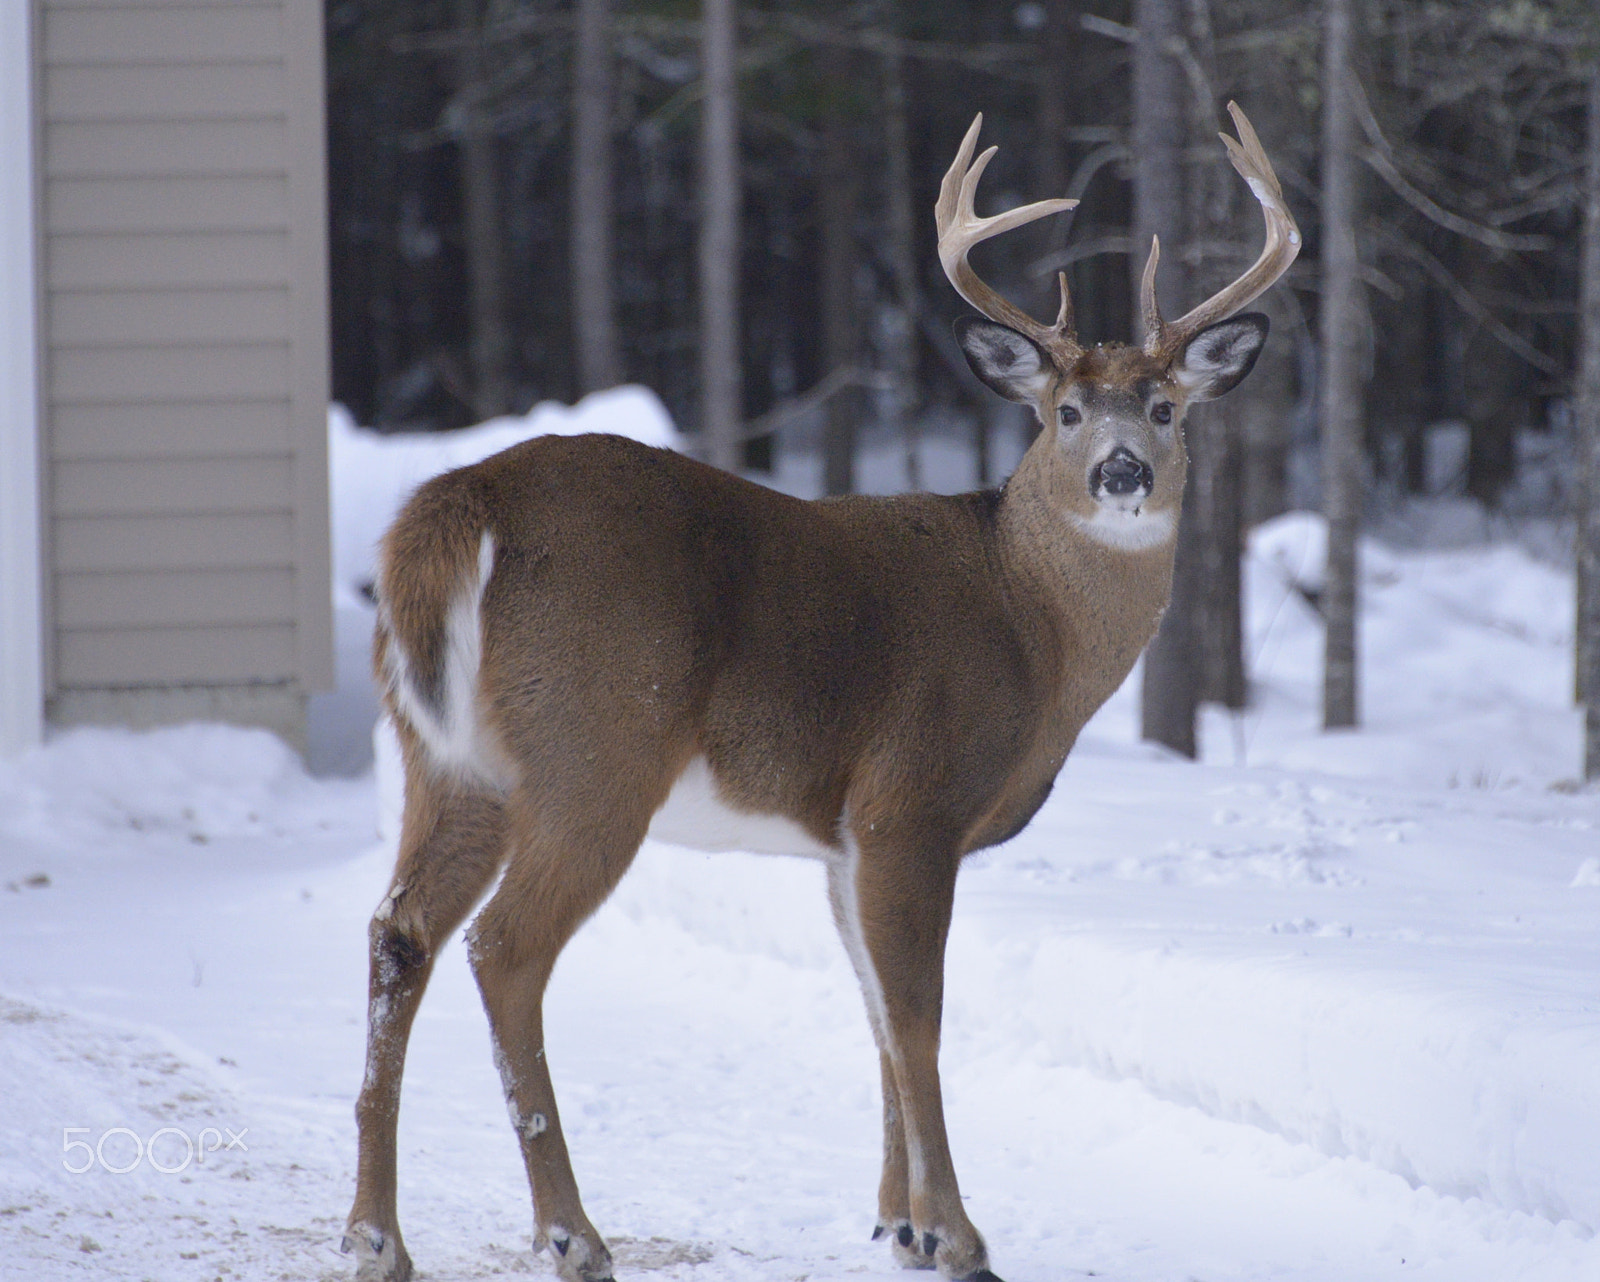 Nikon AF-S Nikkor 28-300mm F3.5-5.6G ED VR sample photo. Maine whitetail deer photography